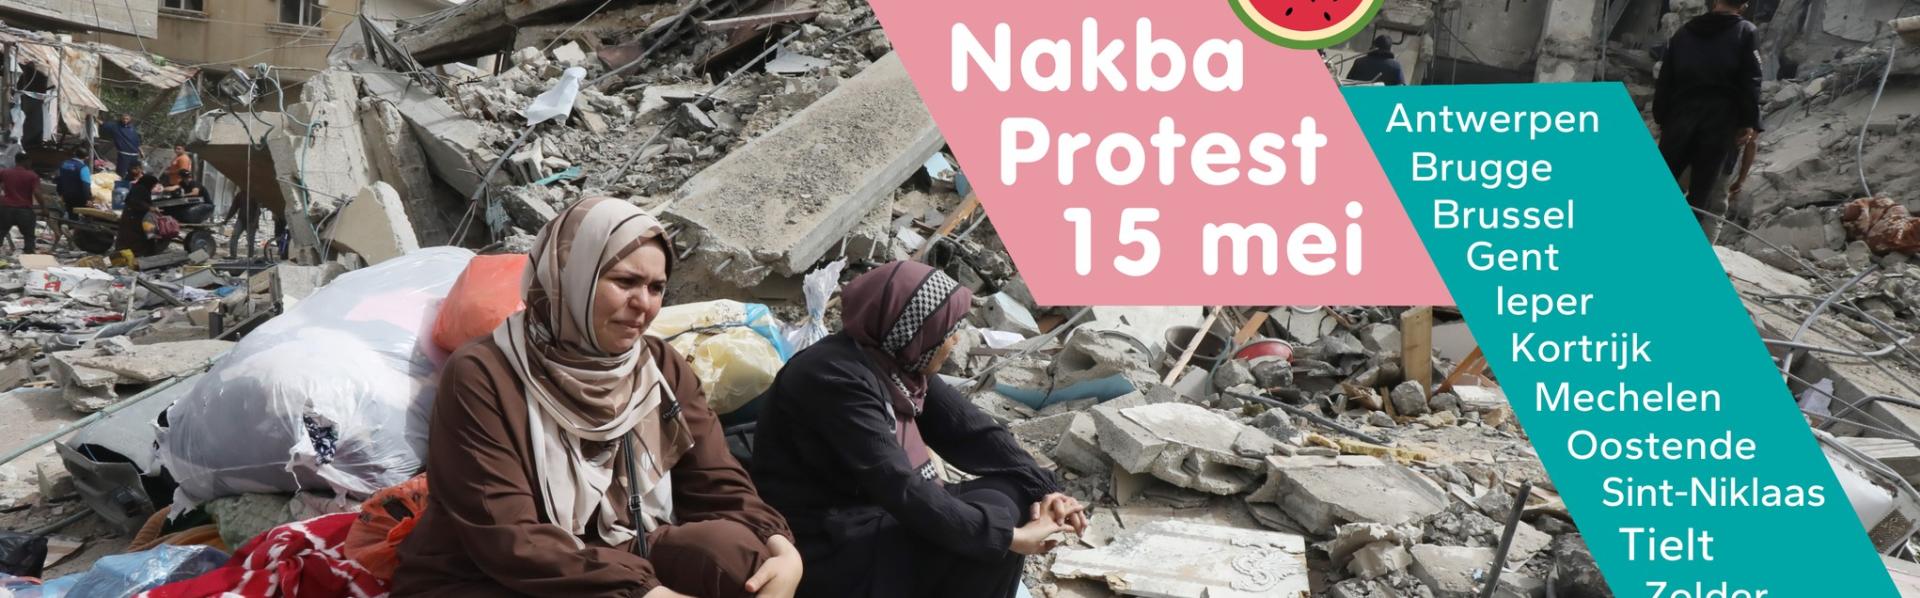 Nakba protest foto van 2 vrouwen in tranen op het puin